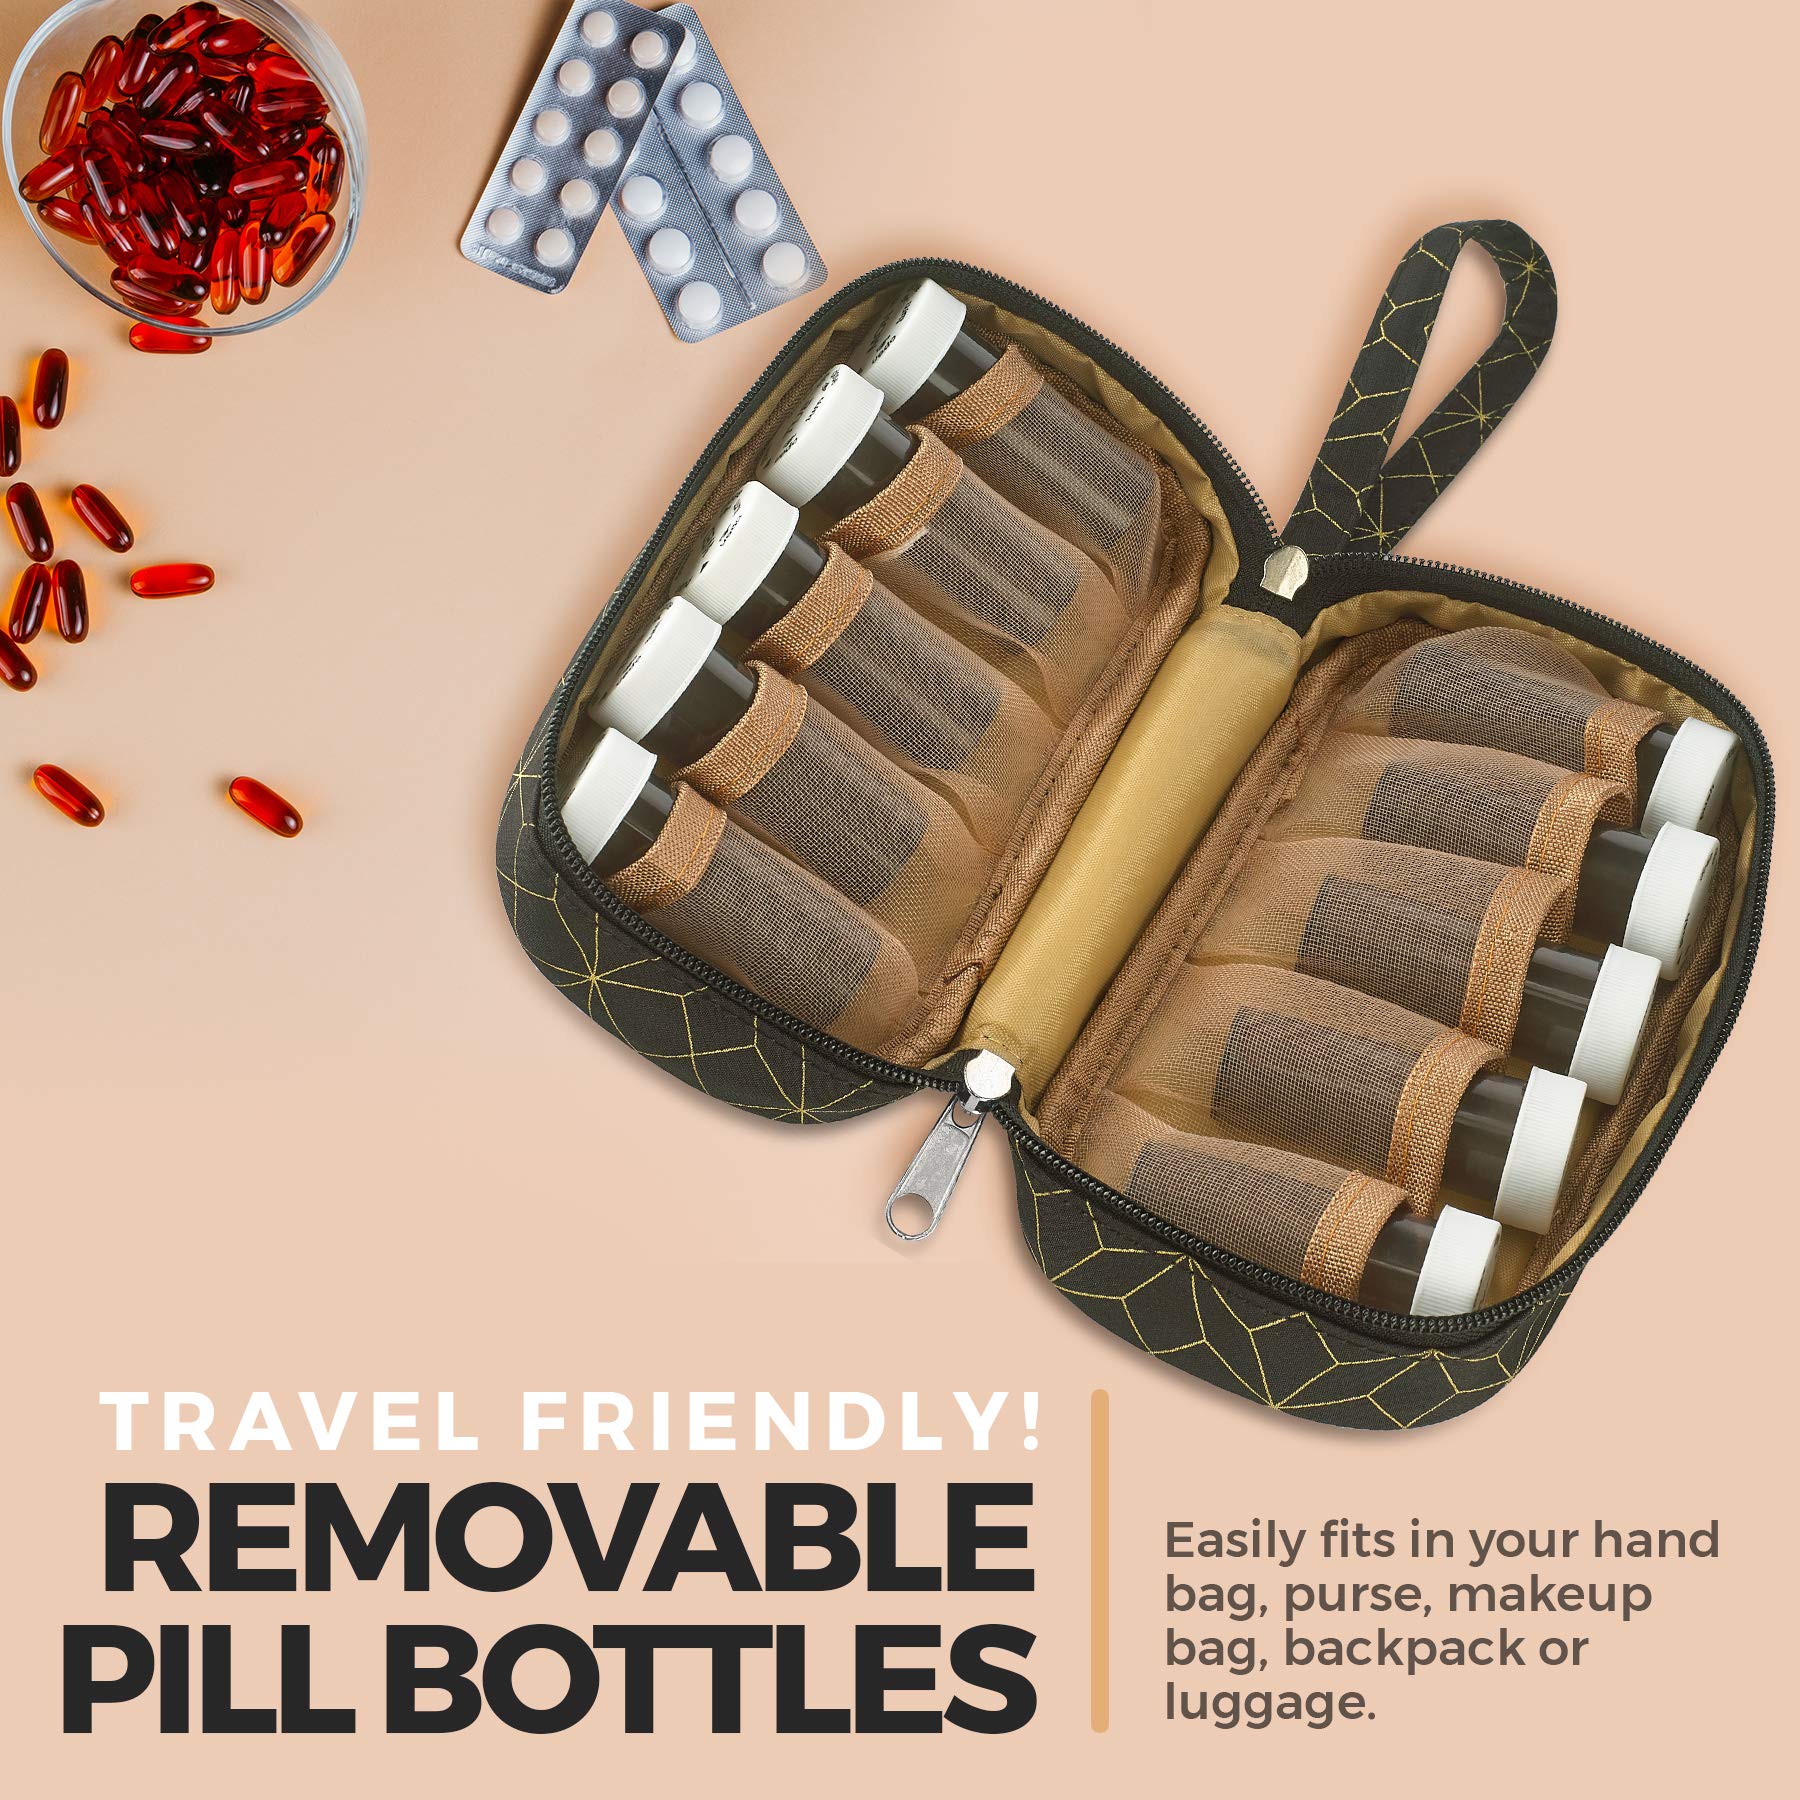 pill bottles for travel